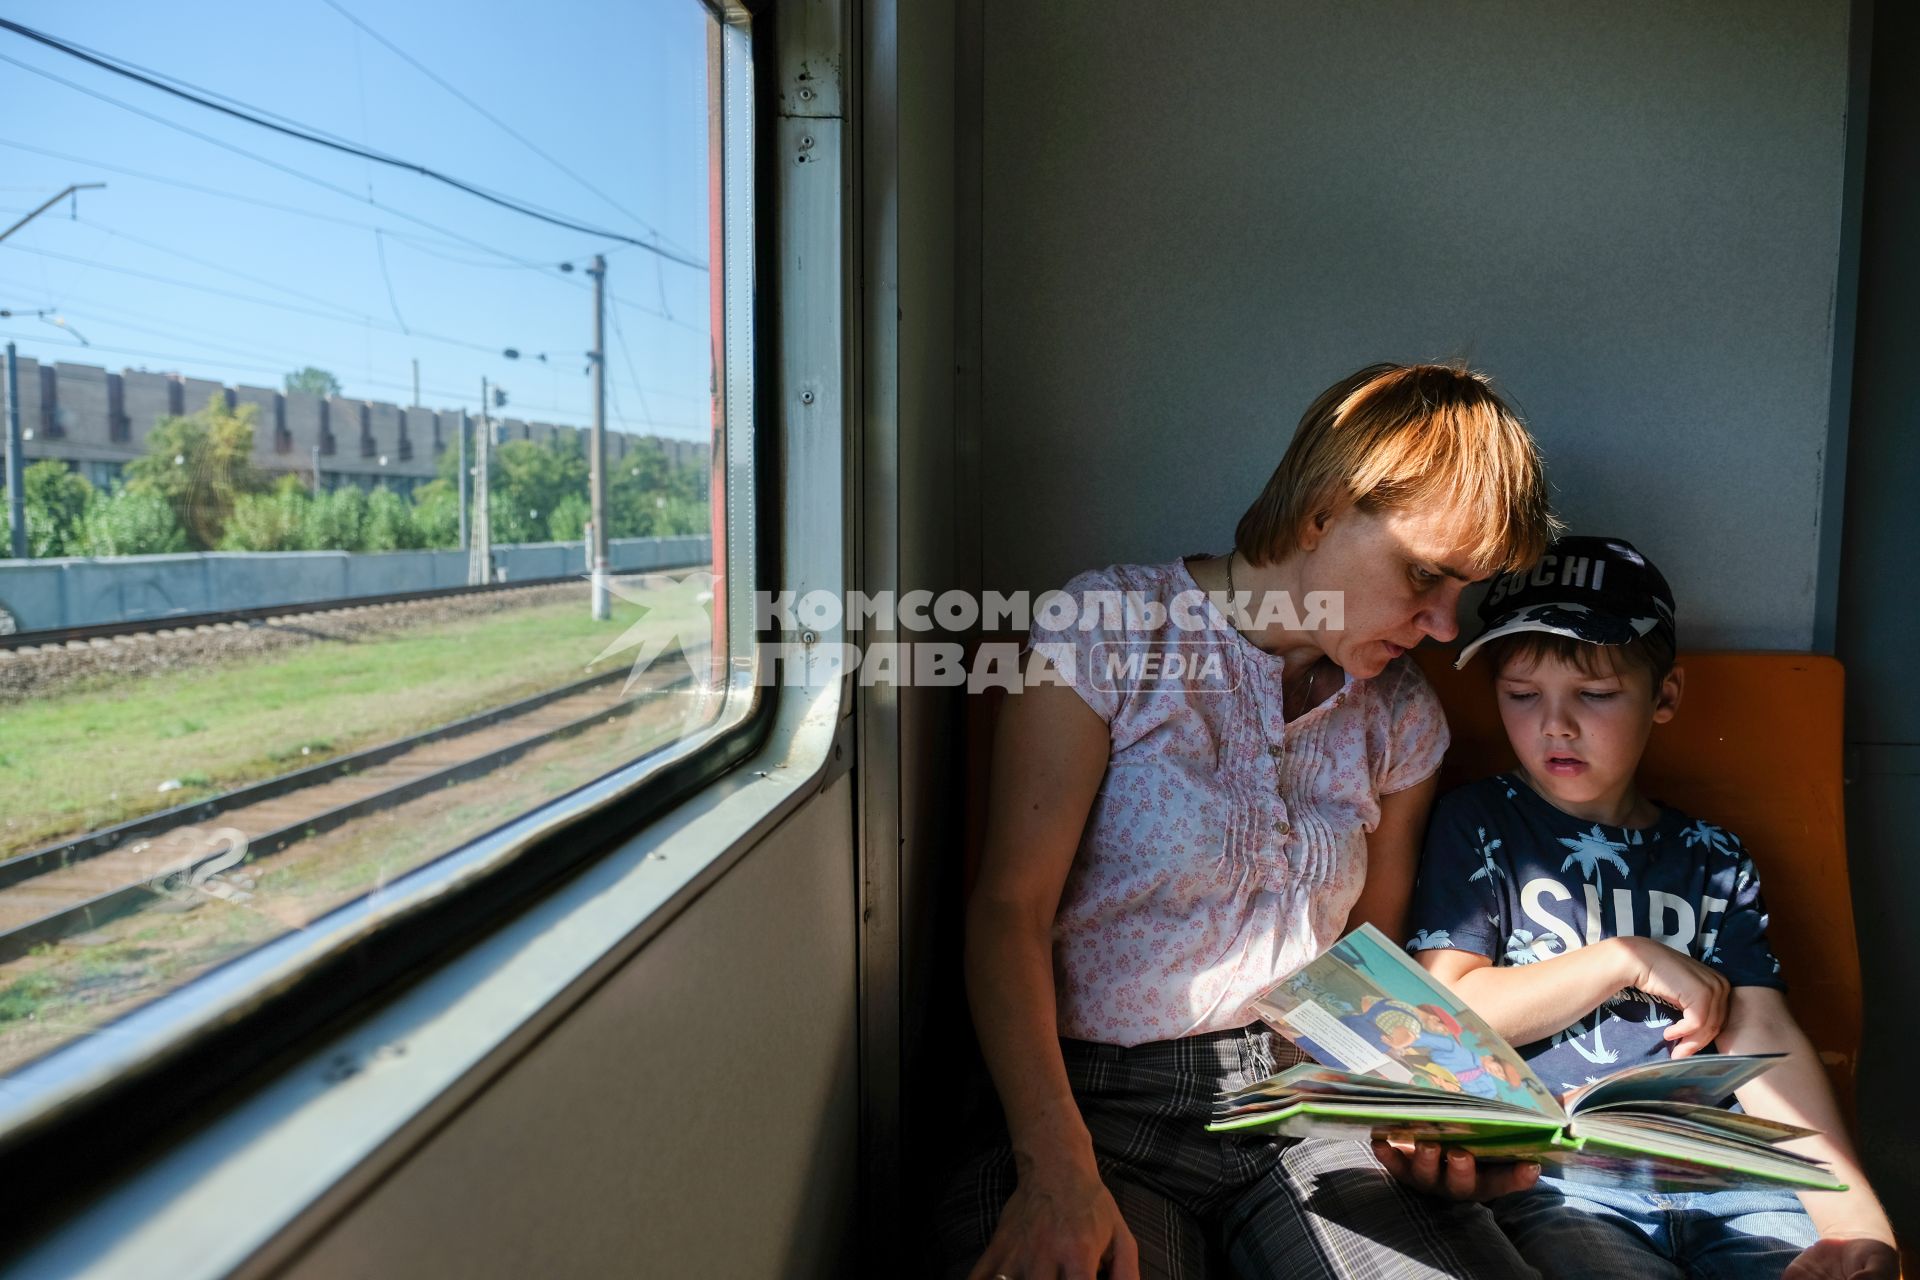 Санкт-Петербург.  Женщина с ребенком в электричке.